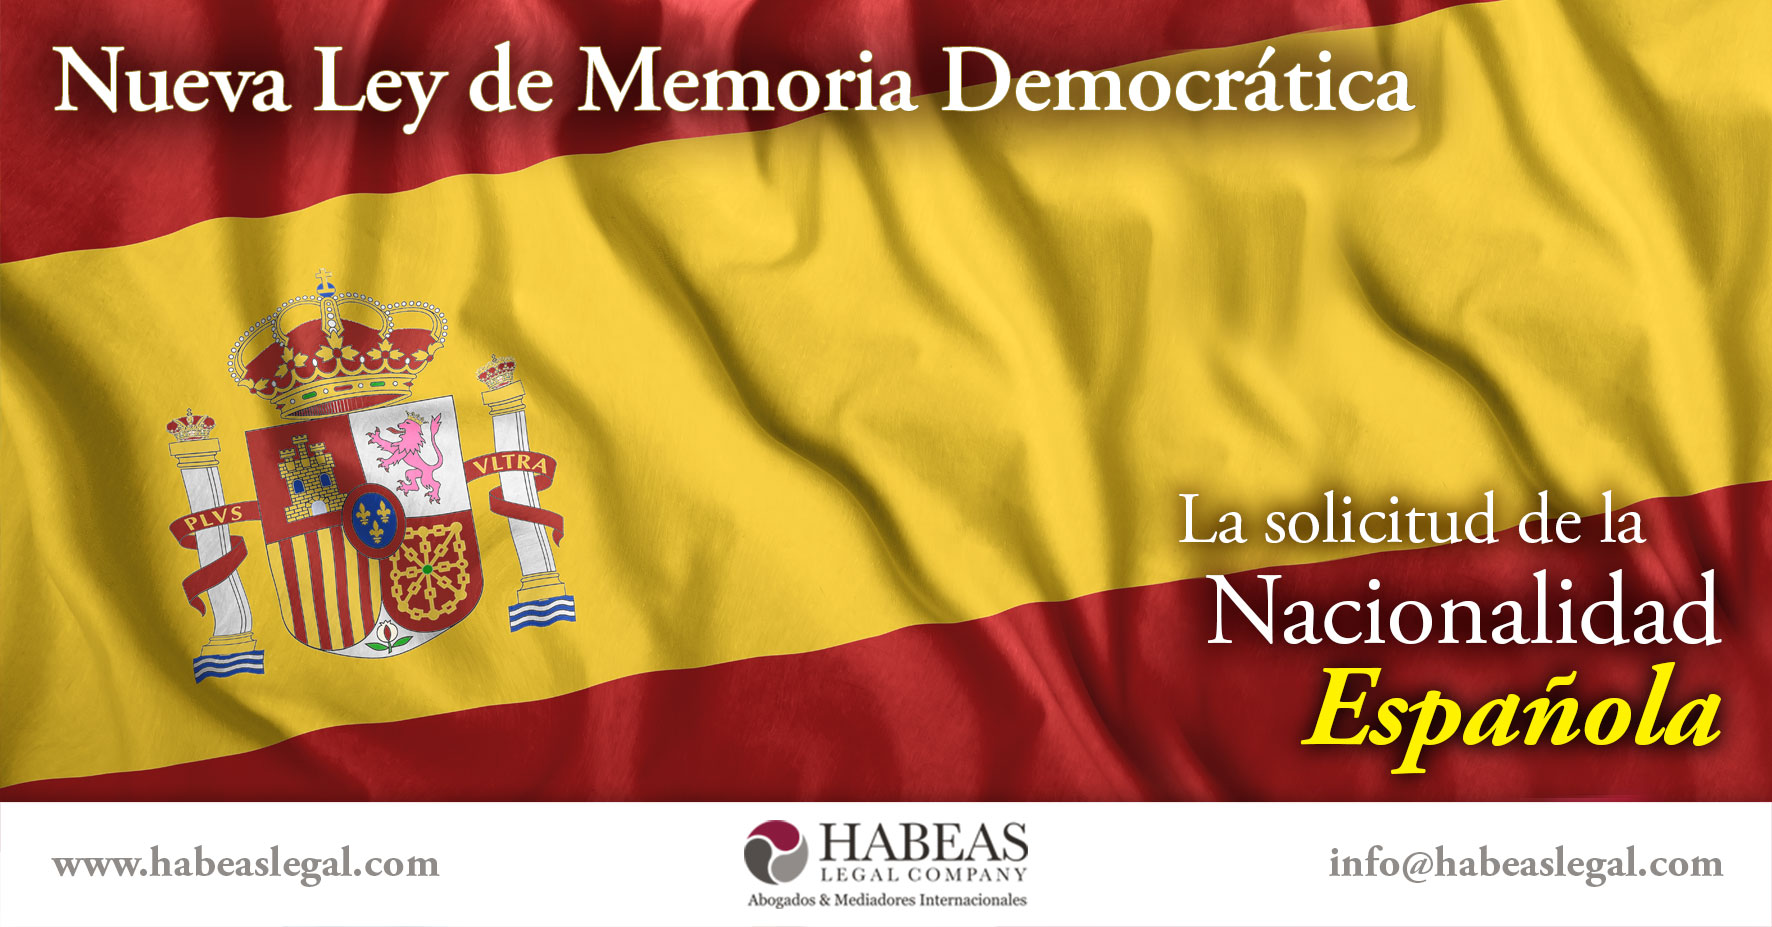 Nueva Ley Memoria Democratica Nacionalidad Espanola Habeas Legal - Derechos y Obligaciones Laborales